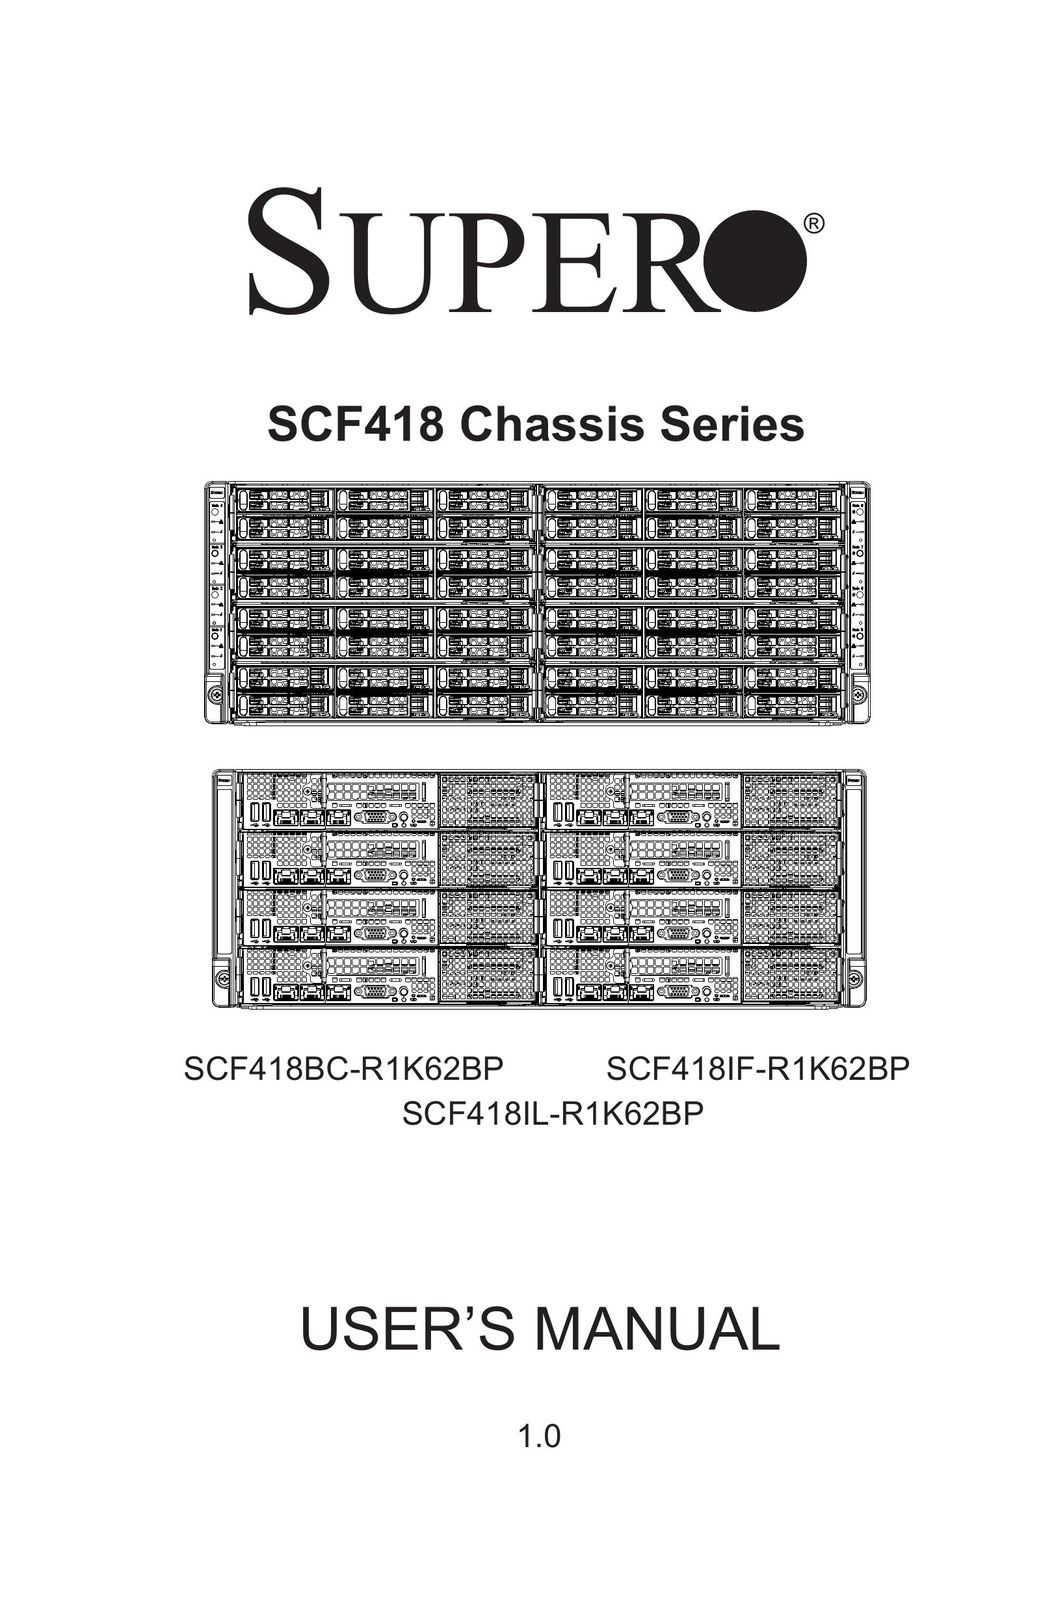 SUPER MICRO Computer SCF418IL-R1K62BP Computer Hardware User Manual